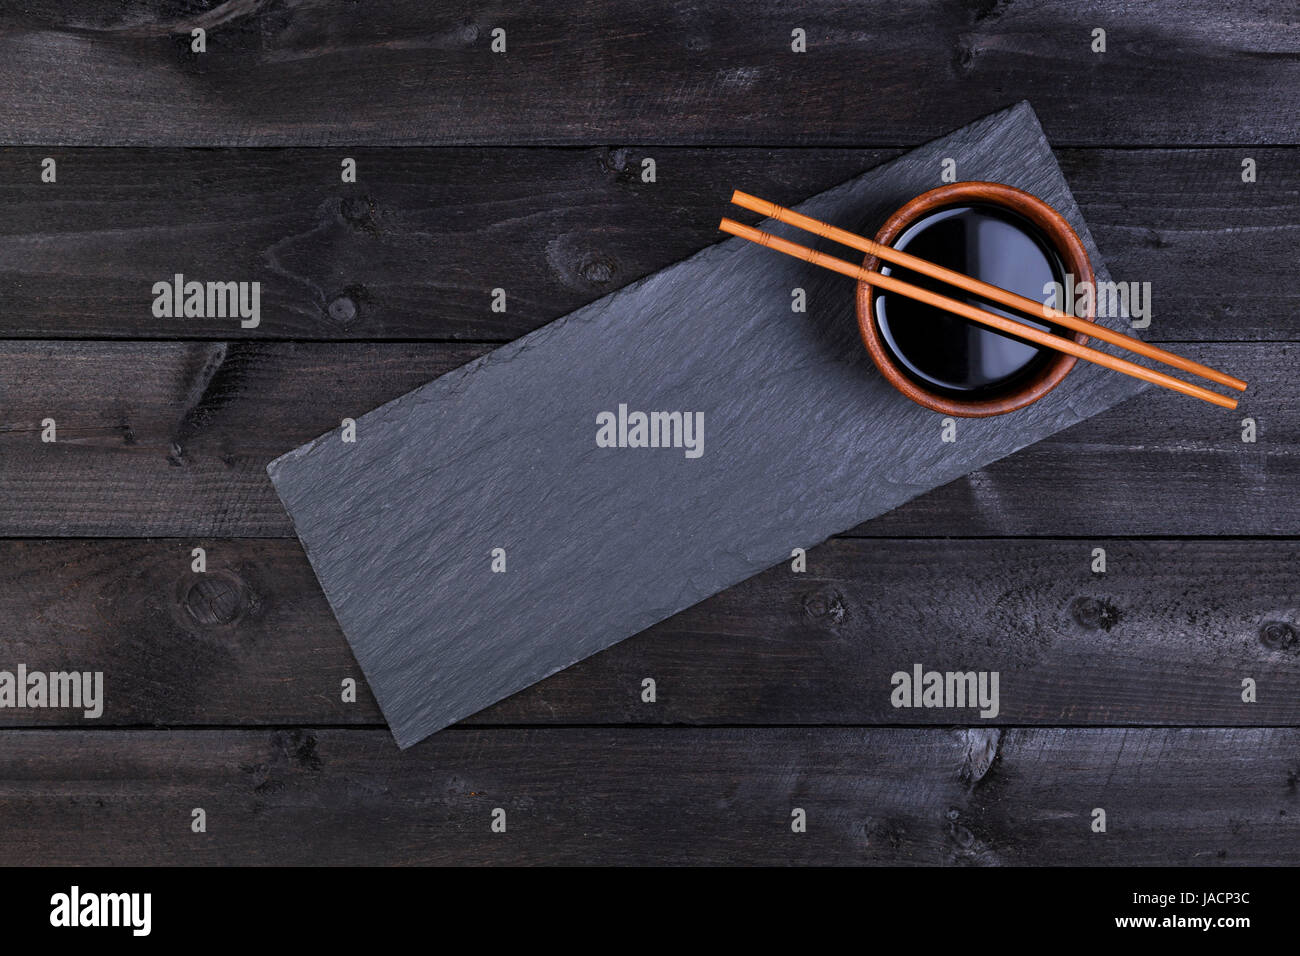 Zubehör für Sushi. Sojasauce, Stäbchen auf schwarzen Steinplatte. Draufsicht mit Textfreiraum Stockfoto